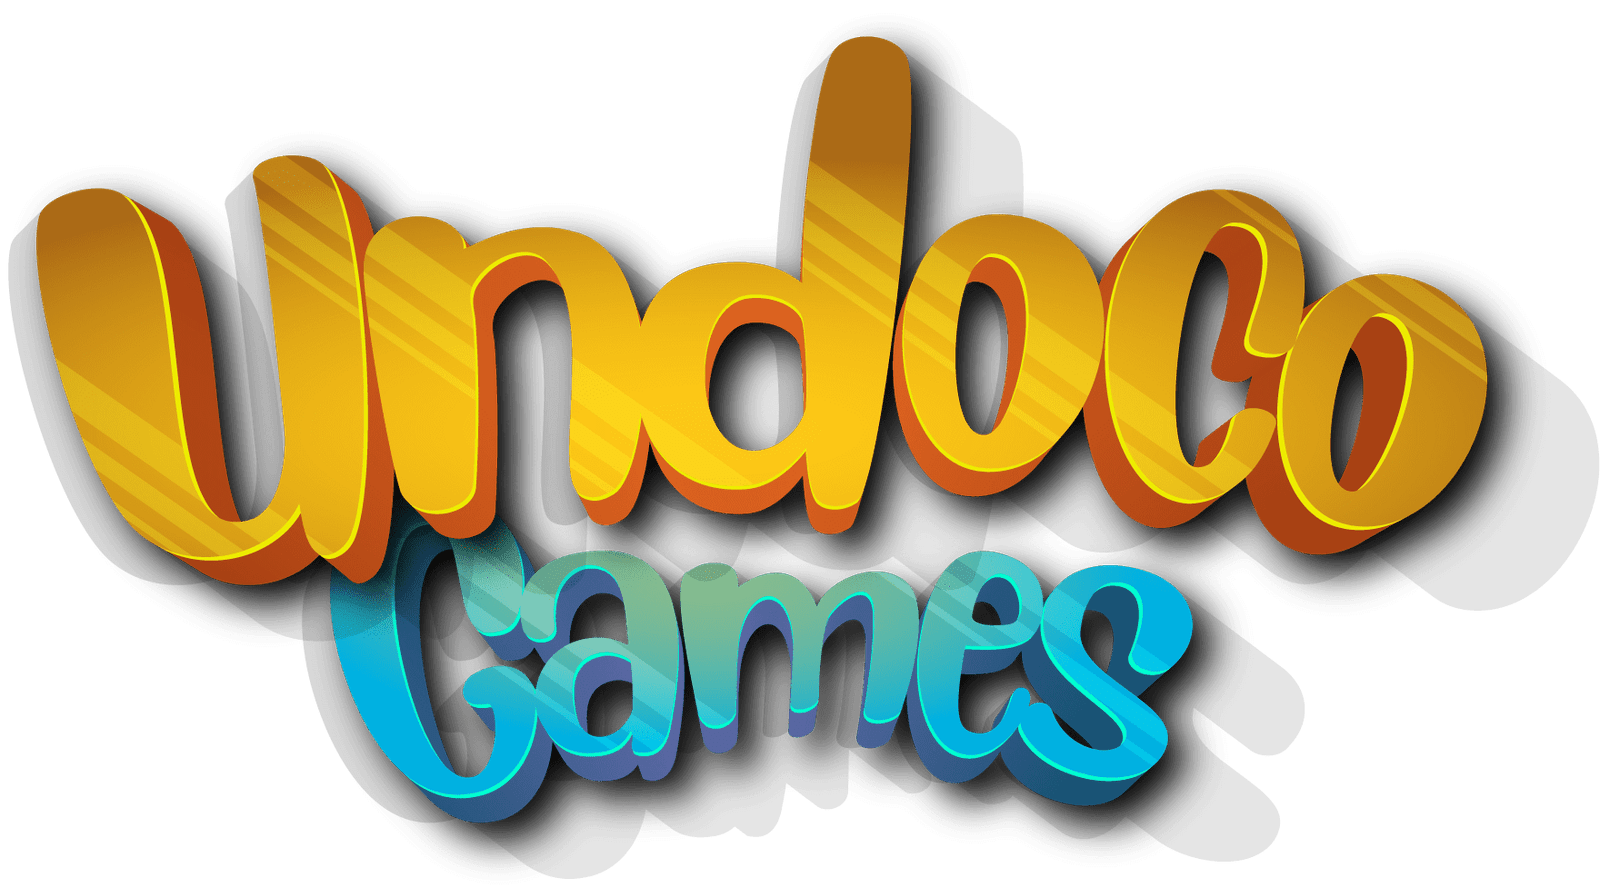 Undoco-Games-Logo kopyası